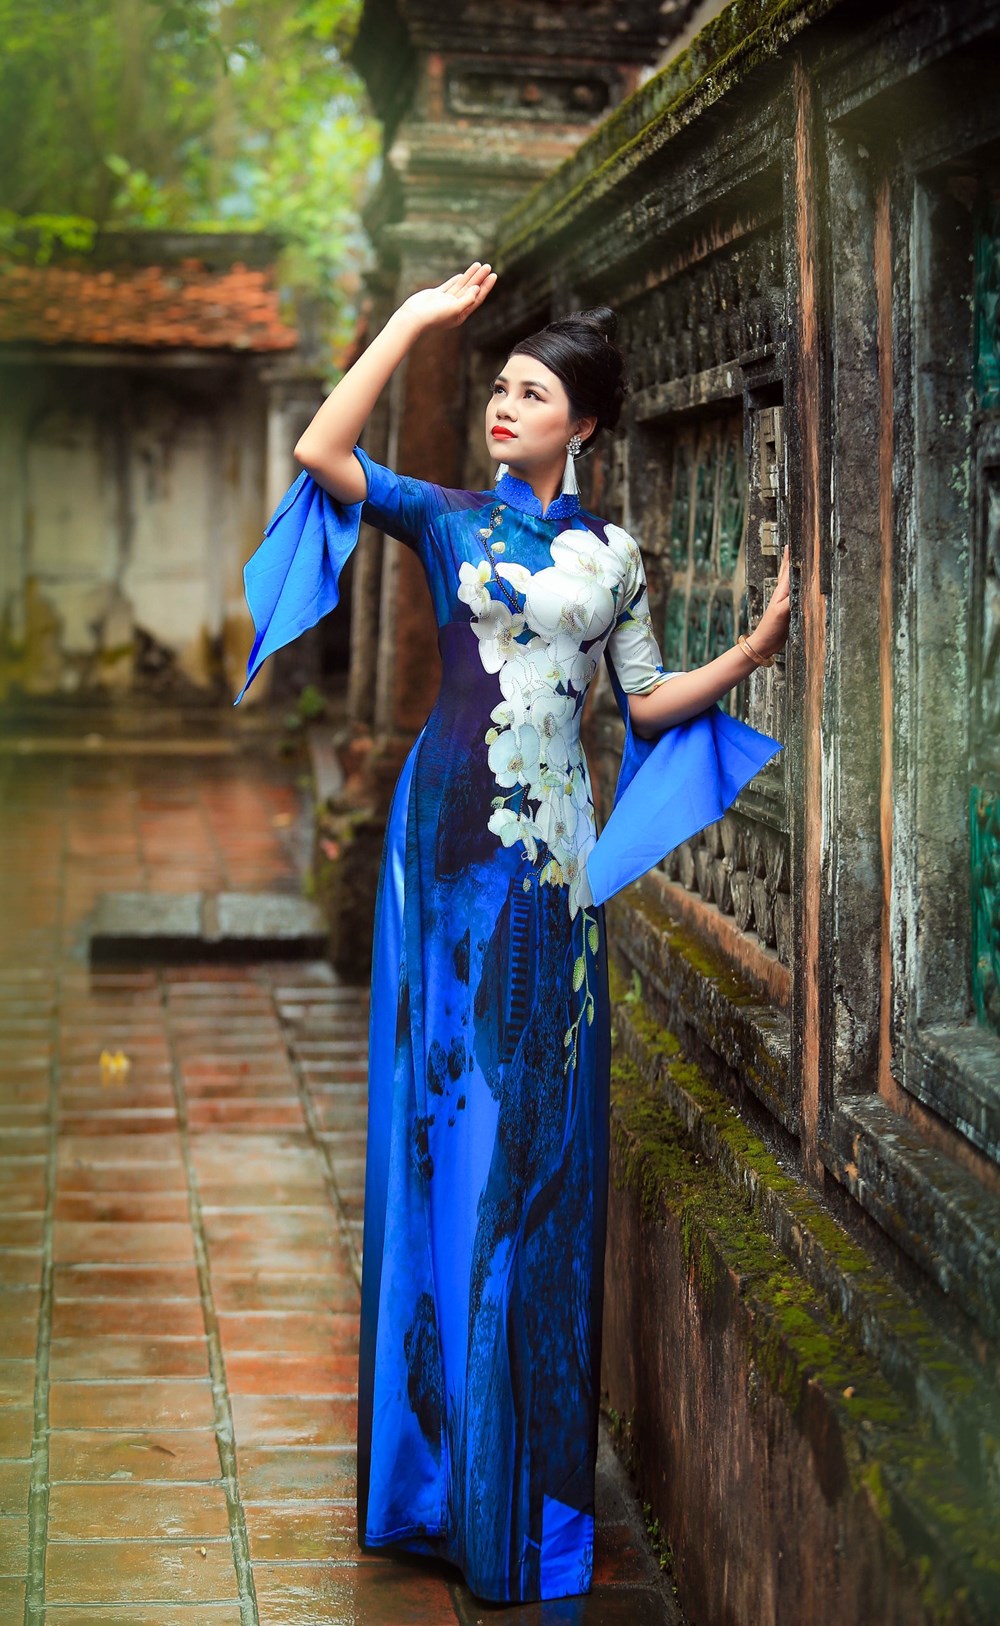 Áo dài với Quốc hoa Indonesia do người mẫu Thanh Thảo thể hiện